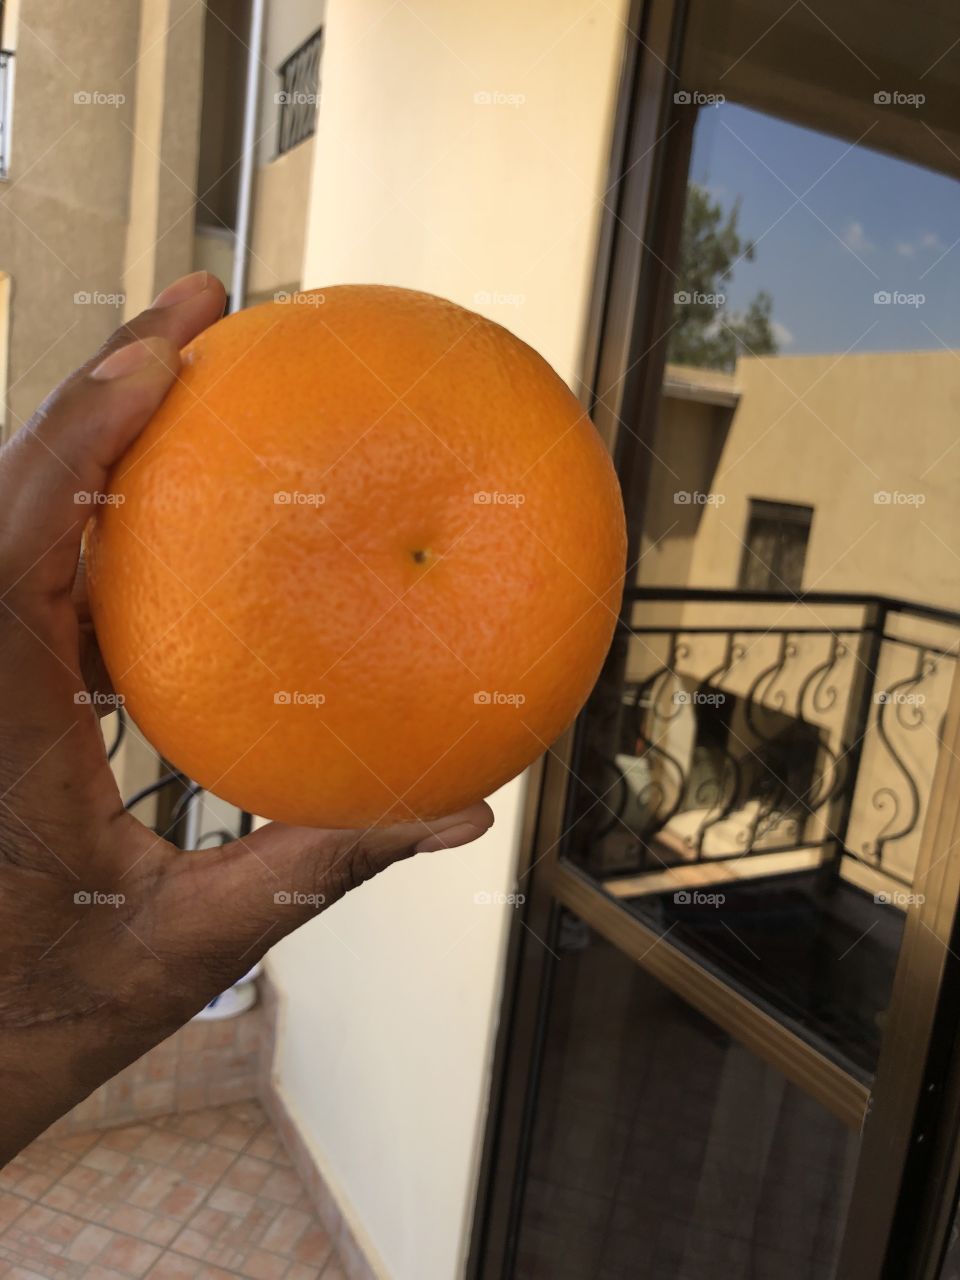 Big African oranges 